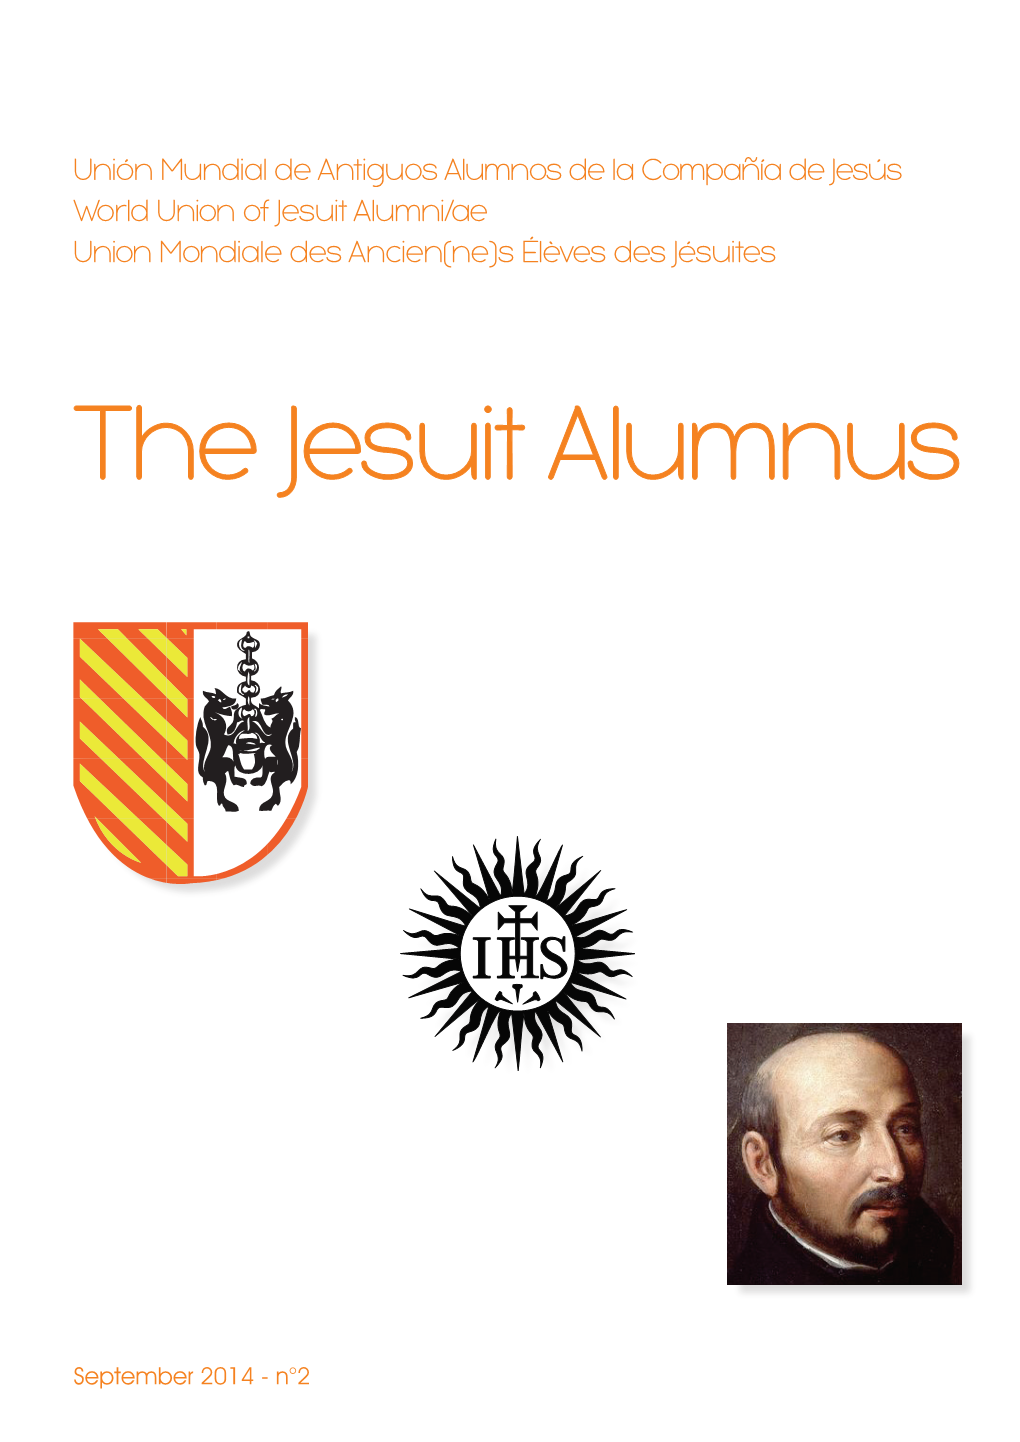 Unión Mundial De Antiguos Alumnos De La Compañía De Jesús World Union of Jesuit Alumni/Ae Union Mondiale Des Ancien(Ne)S Élèves Des Jésuites